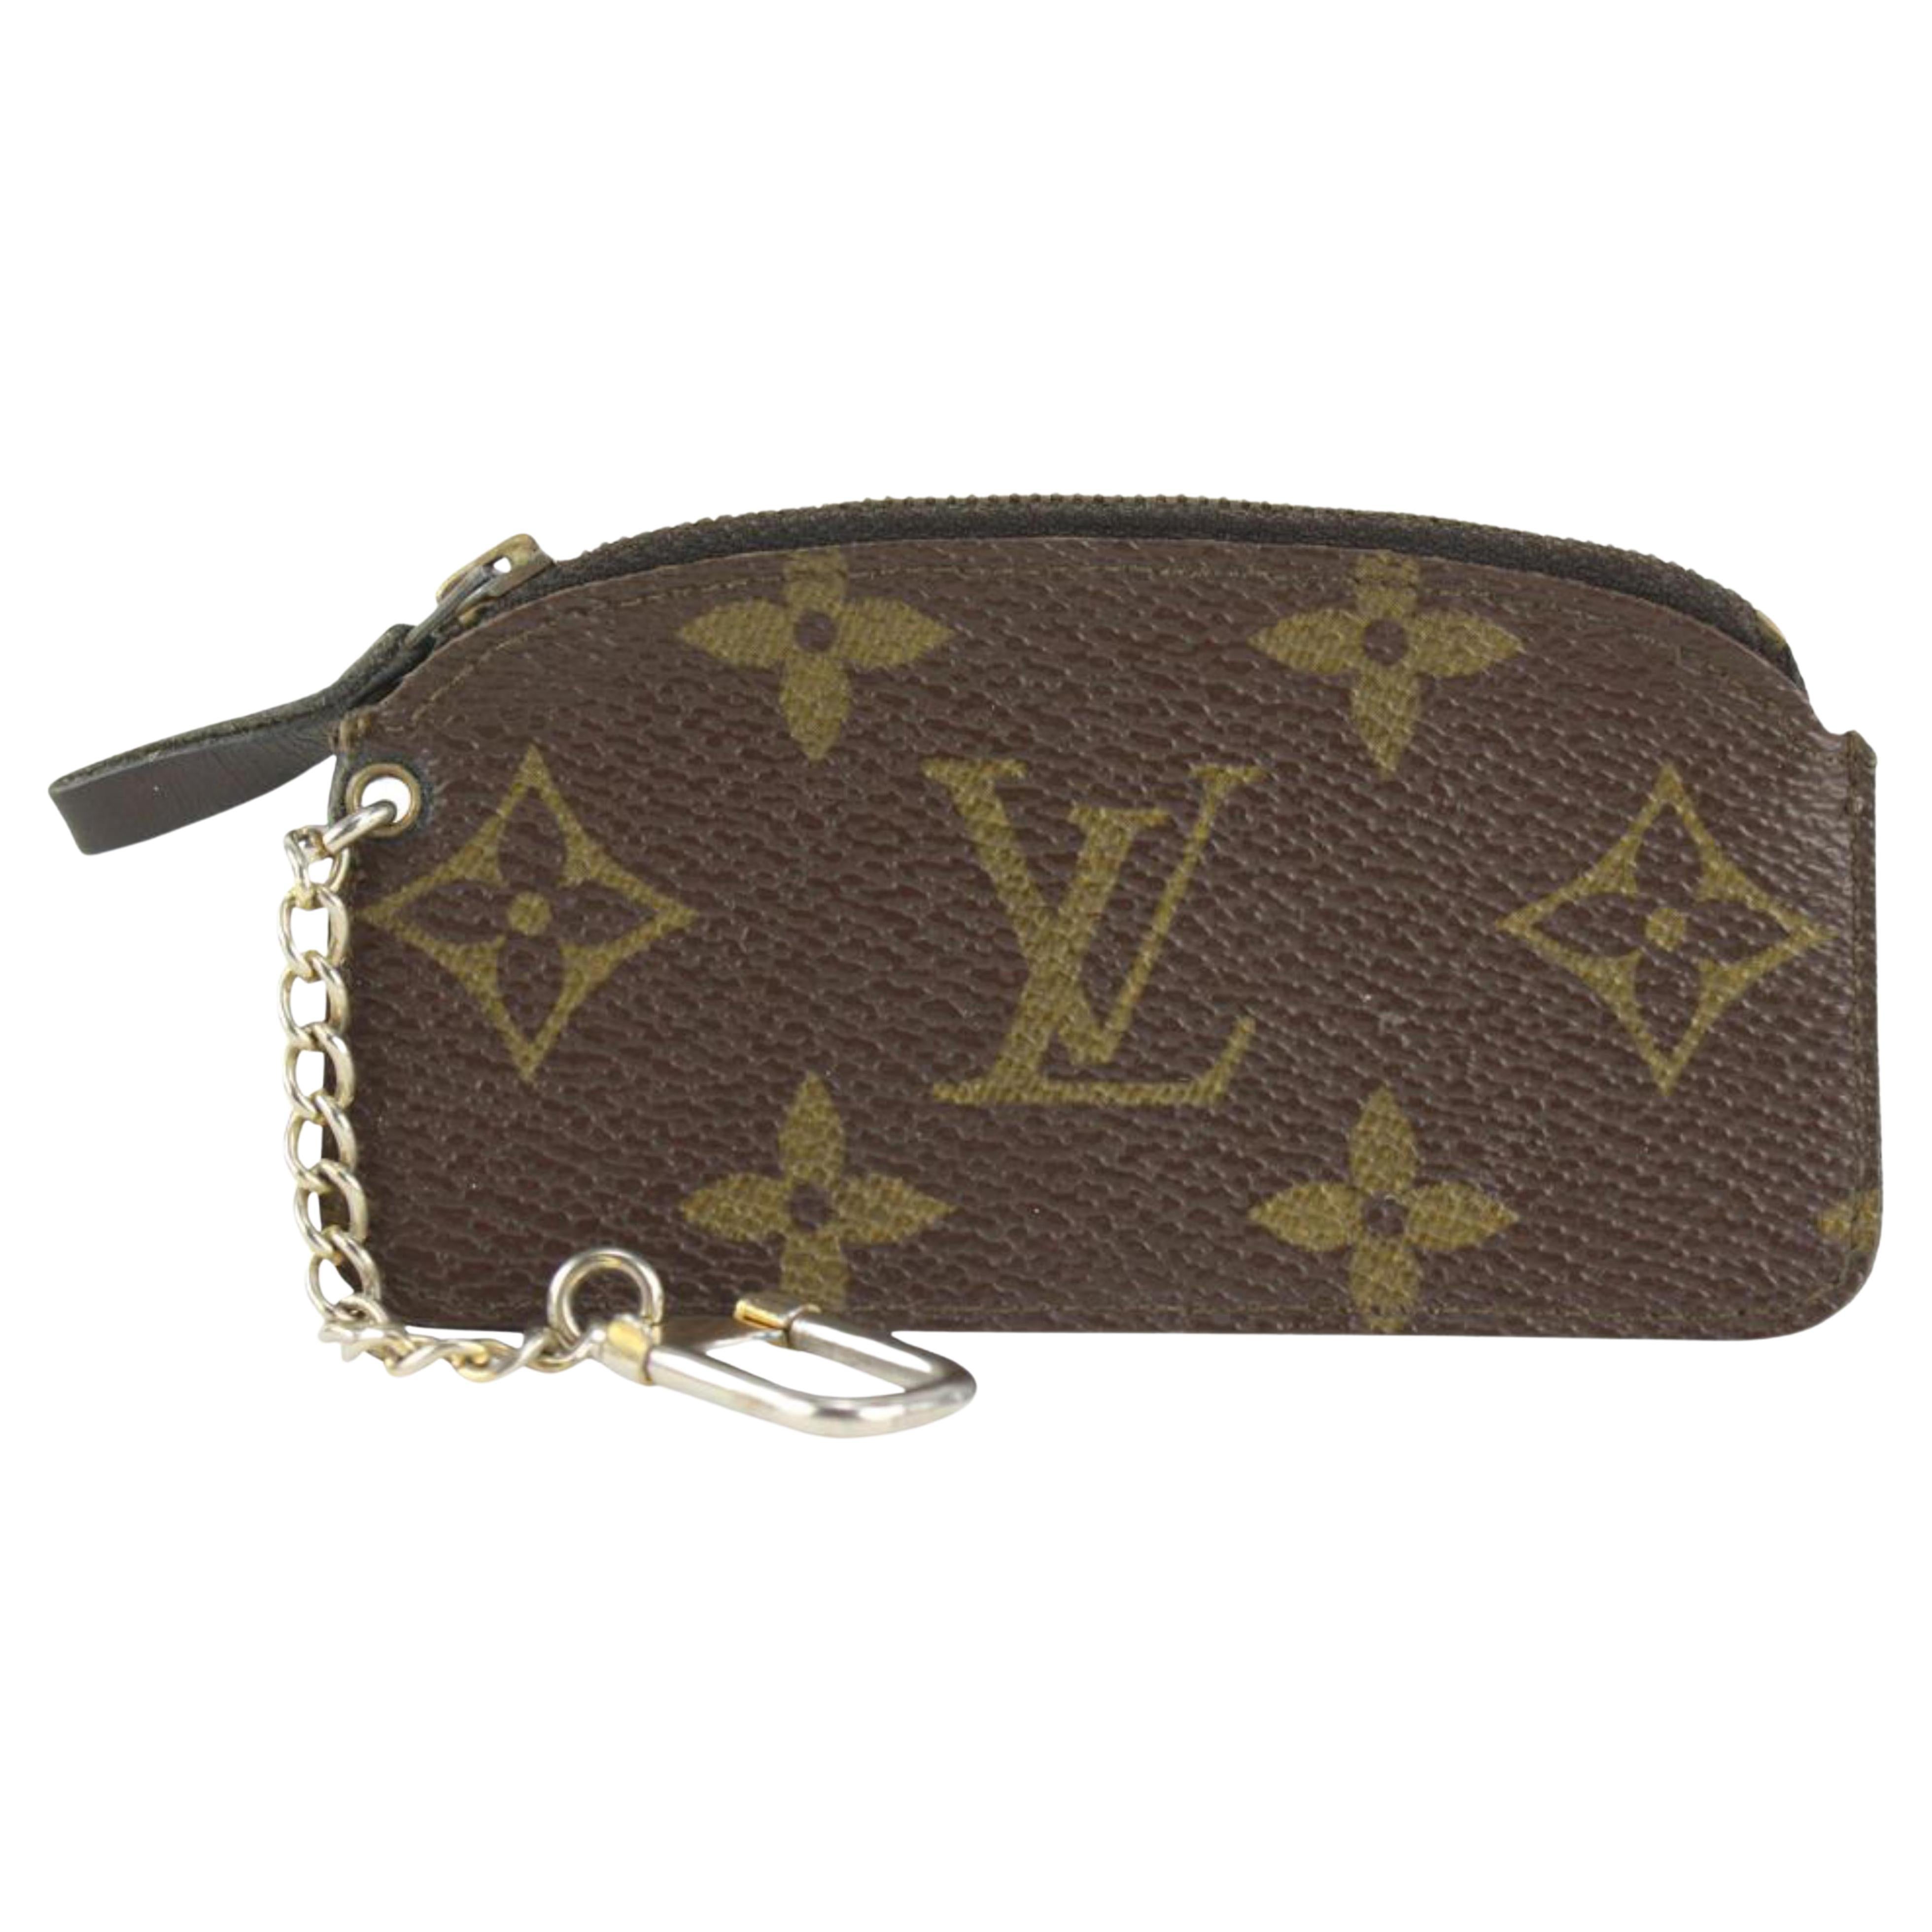 Authentic Louis Vuitton Vintage Monogram Key Pouch Key Cles  Etsy